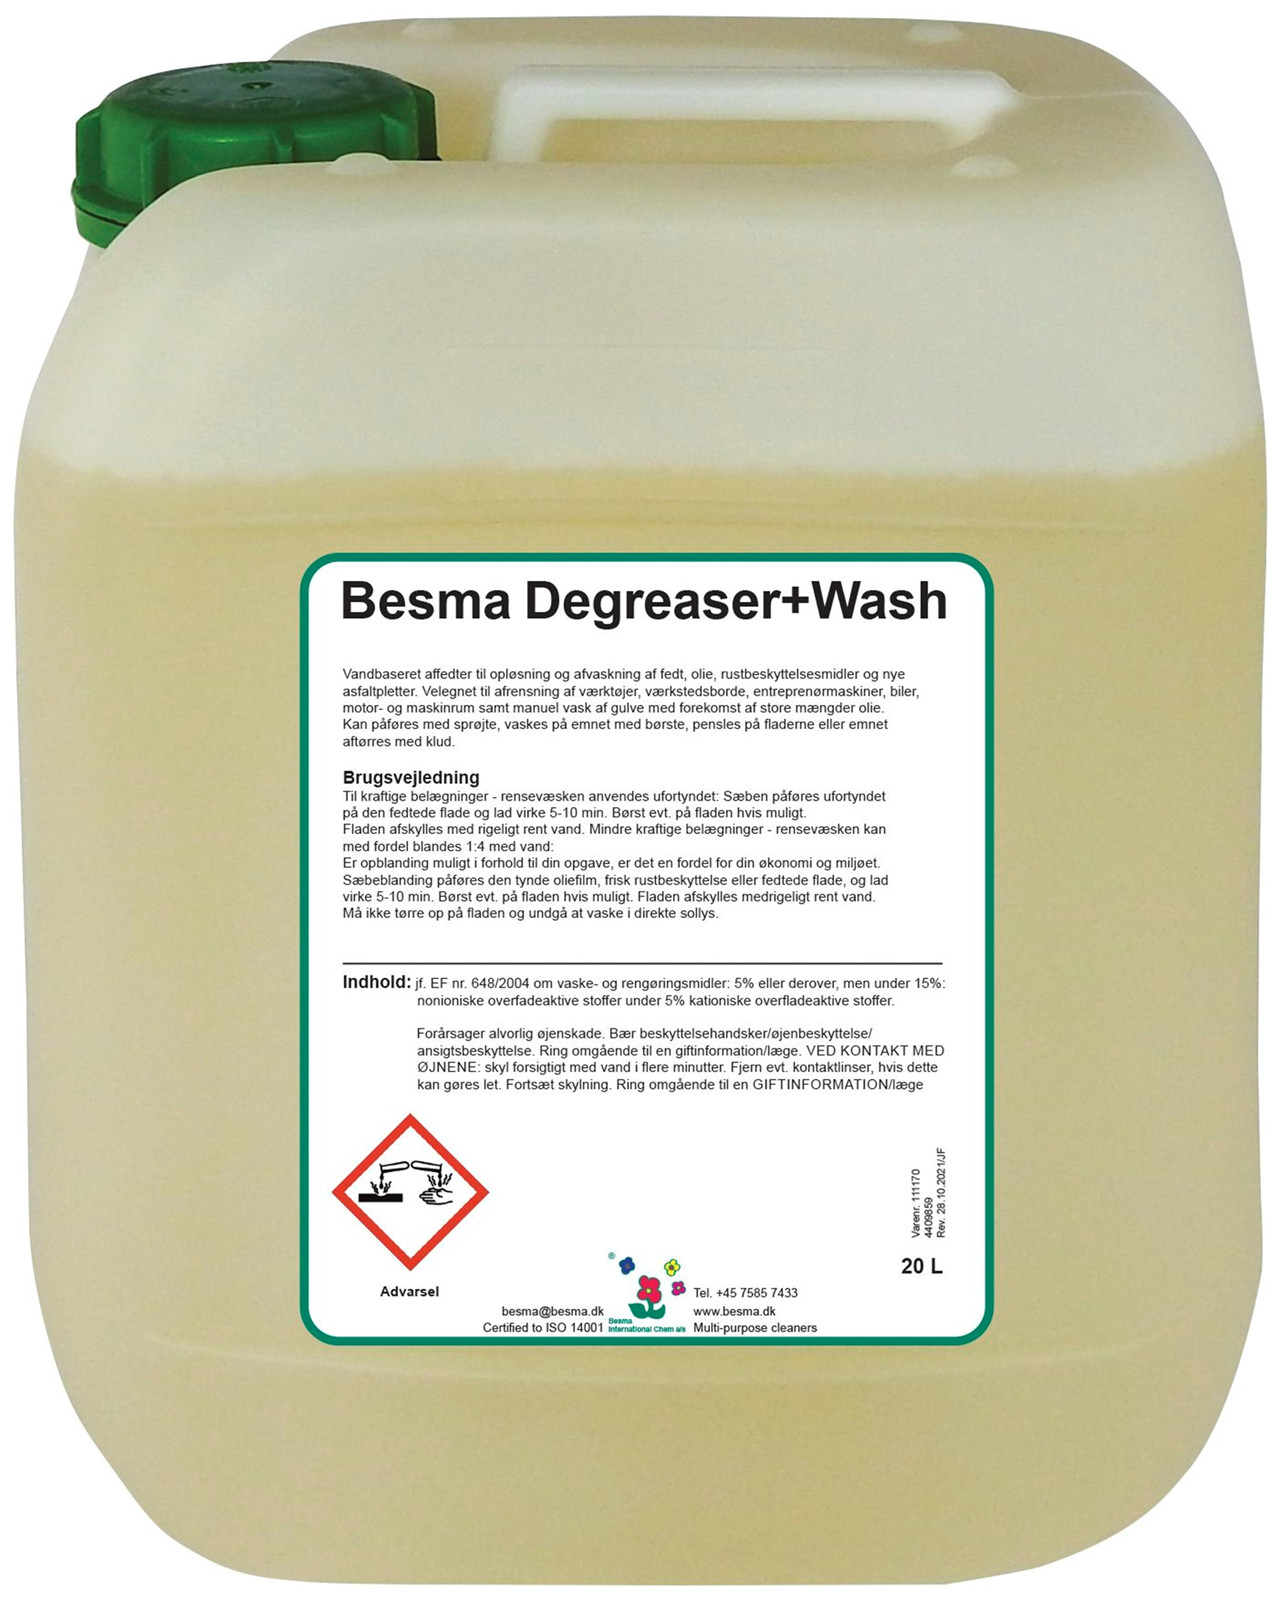 Se Besma Degreaser+Wash 10 L hos Specialbutikken